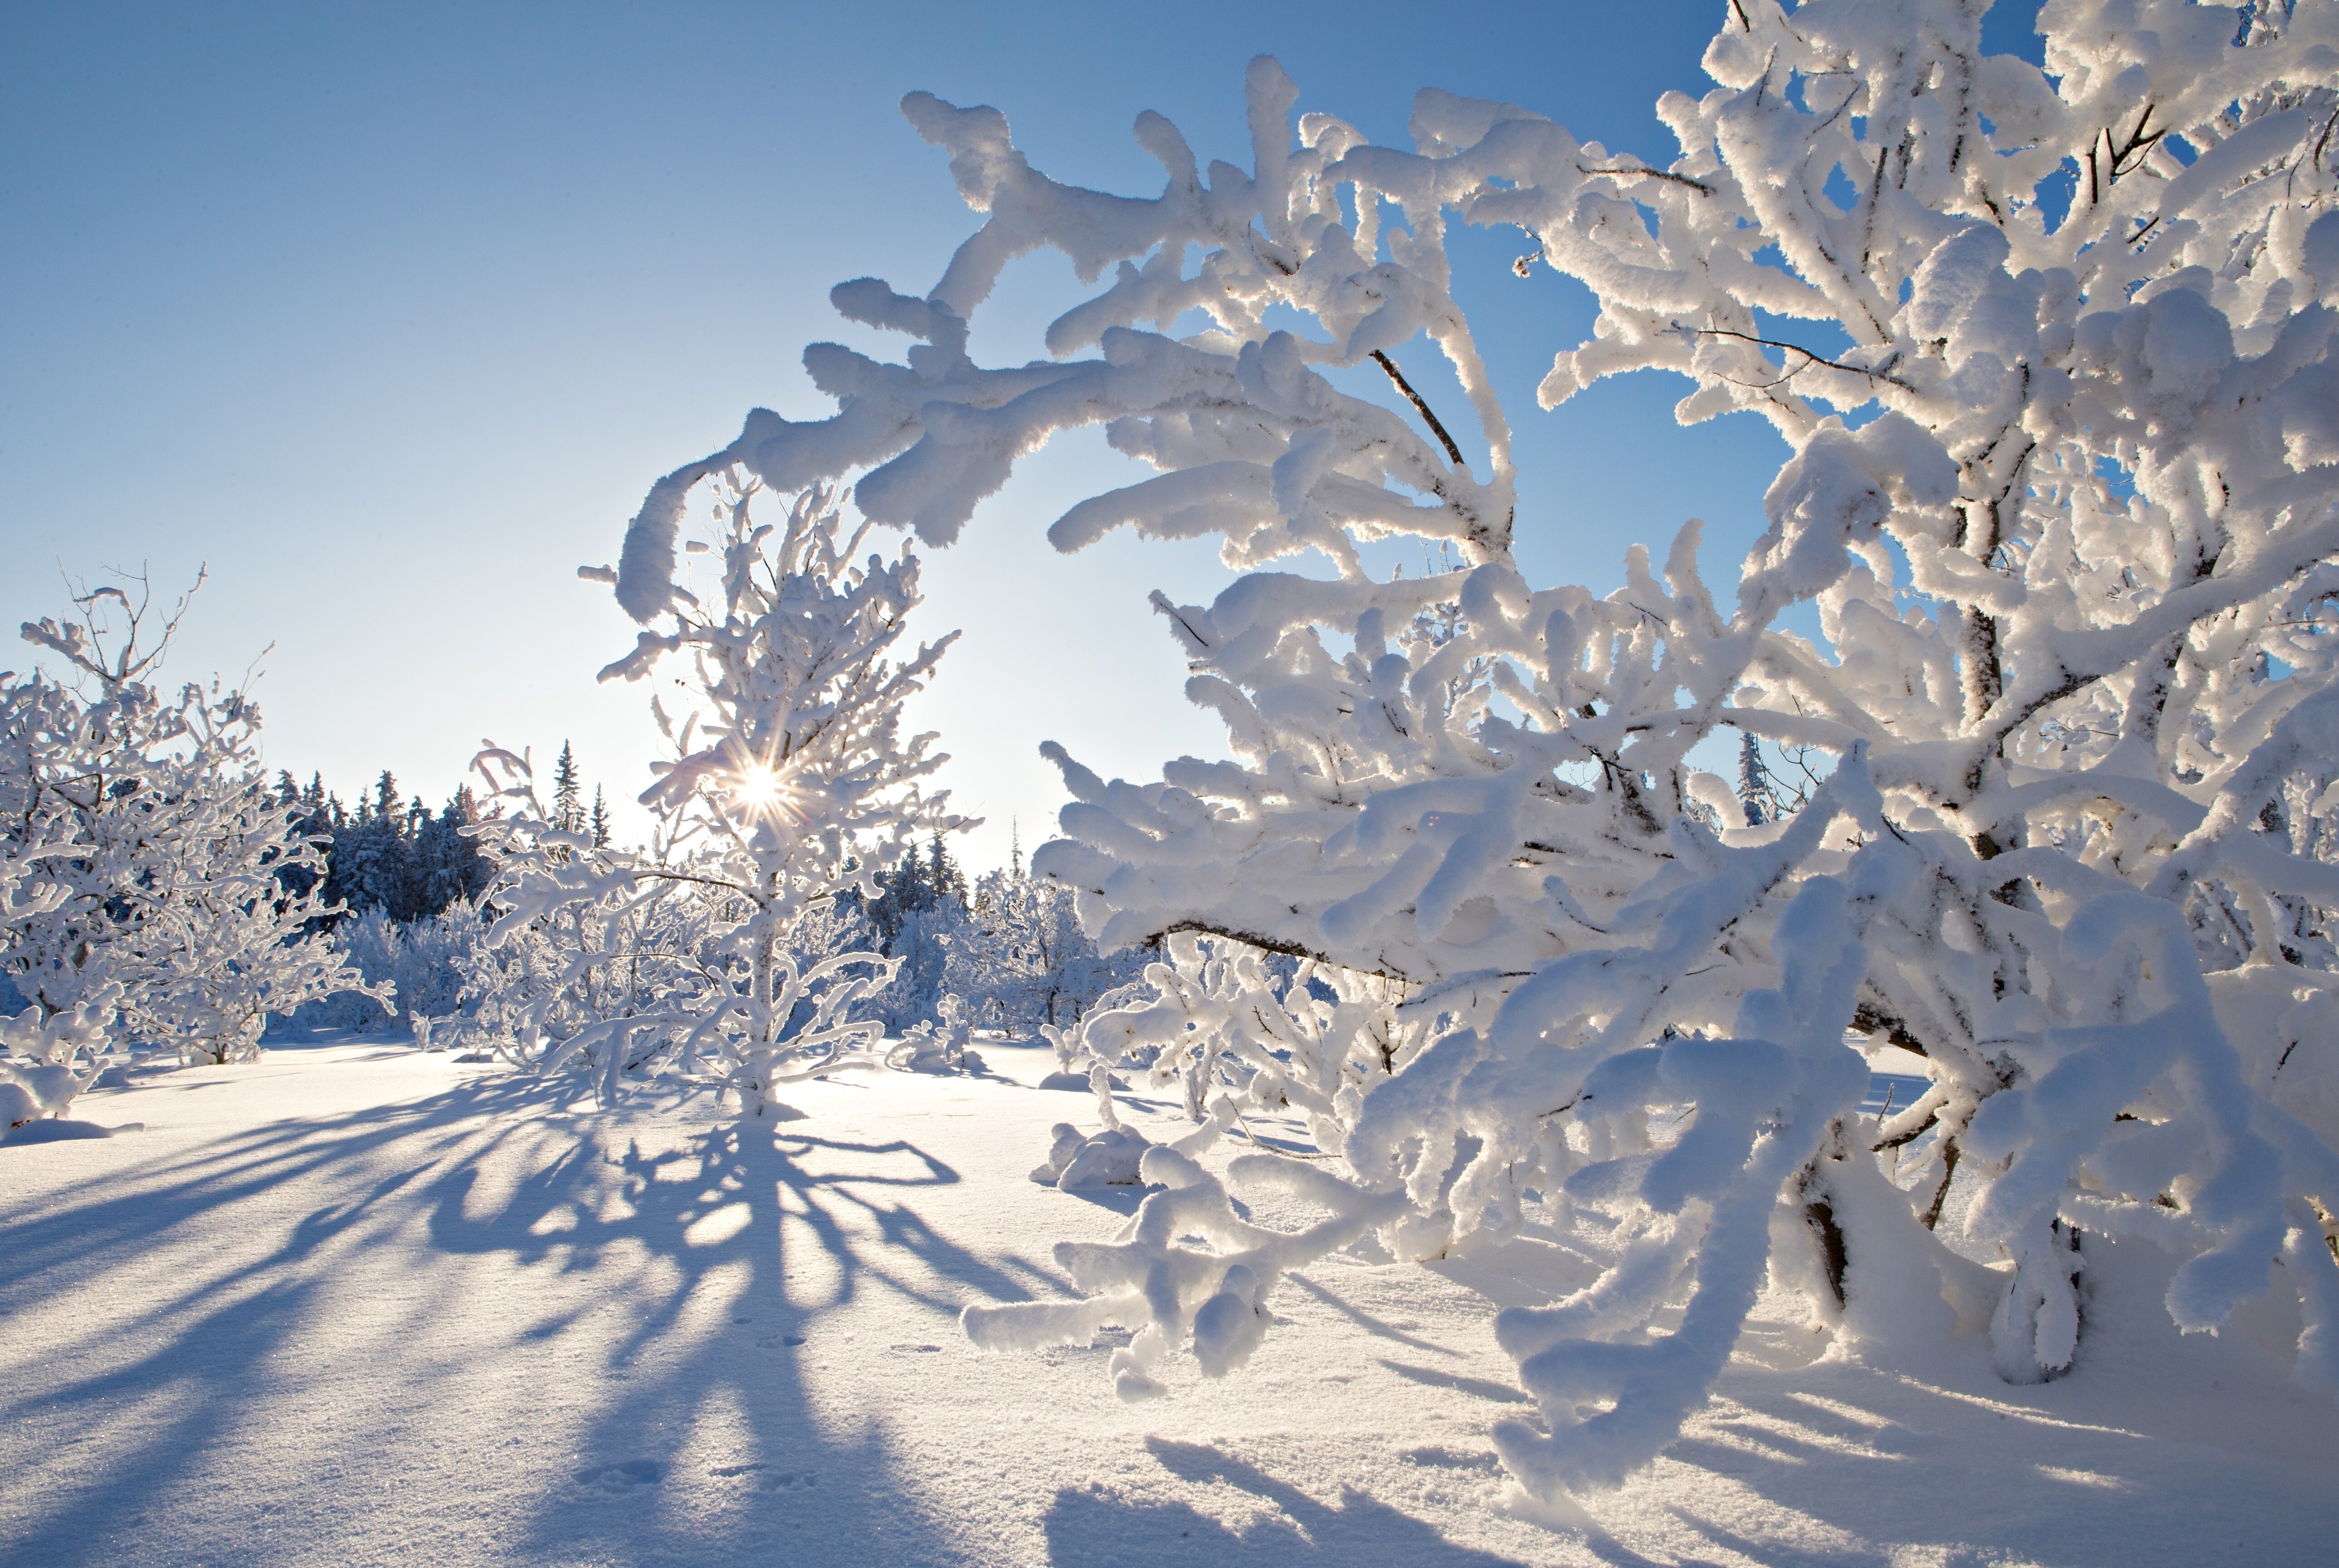 Картинка зимний период. Зима снег. Деревья в снегу. Красивая зима. Зимнее дерево.